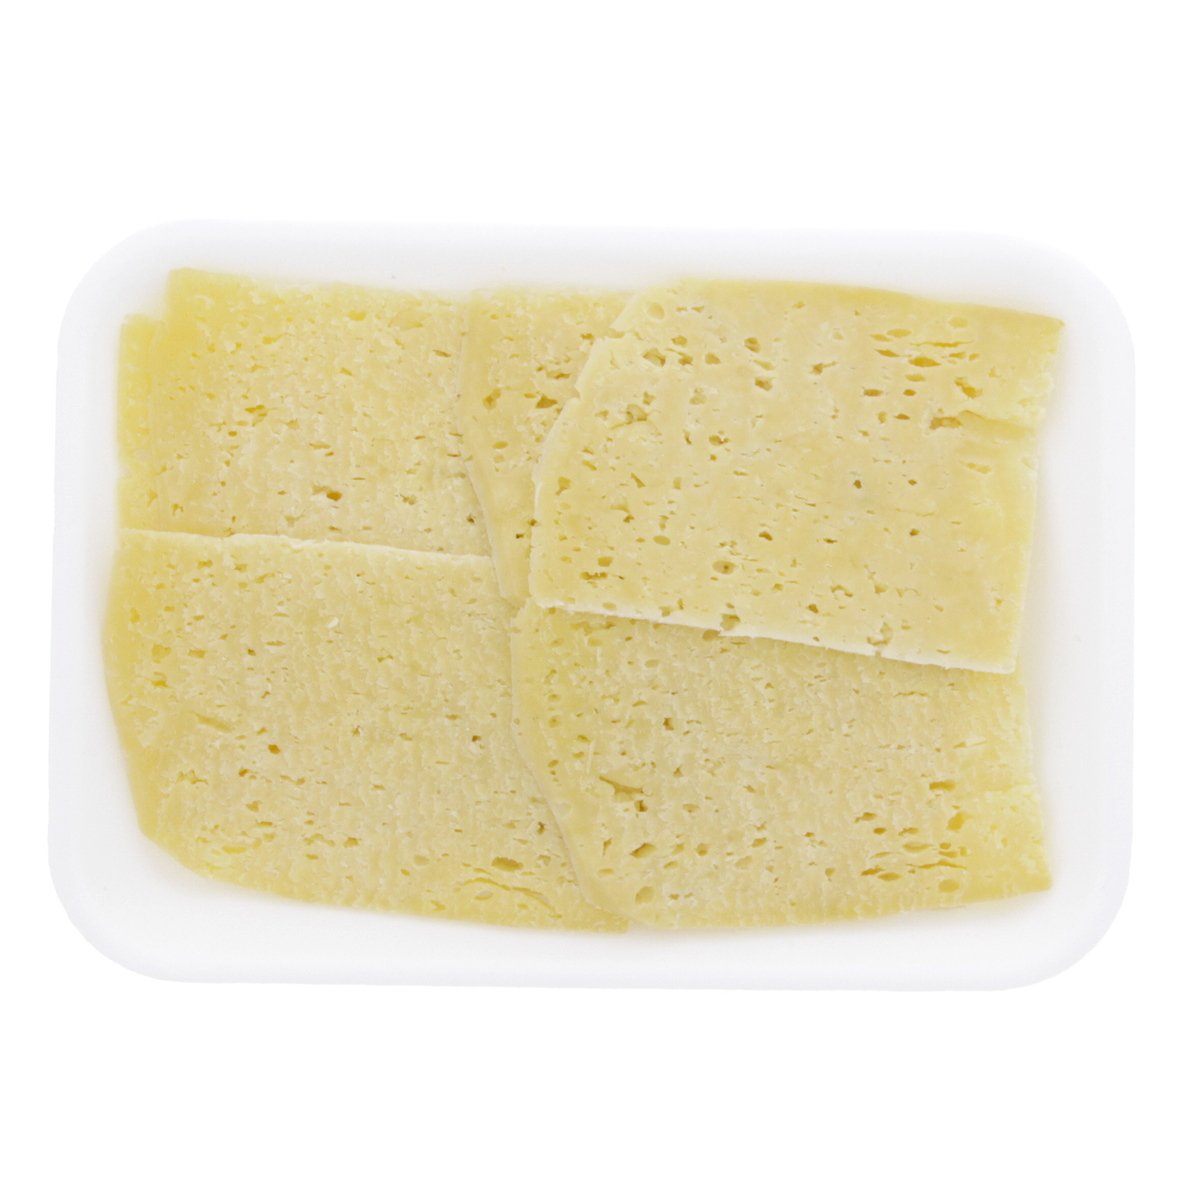 اشتري قم بشراء جبنة رومي مصرية قديمة 300 جم تقريبا Online at Best Price من الموقع - من لولو هايبر ماركت White Cheese في السعودية